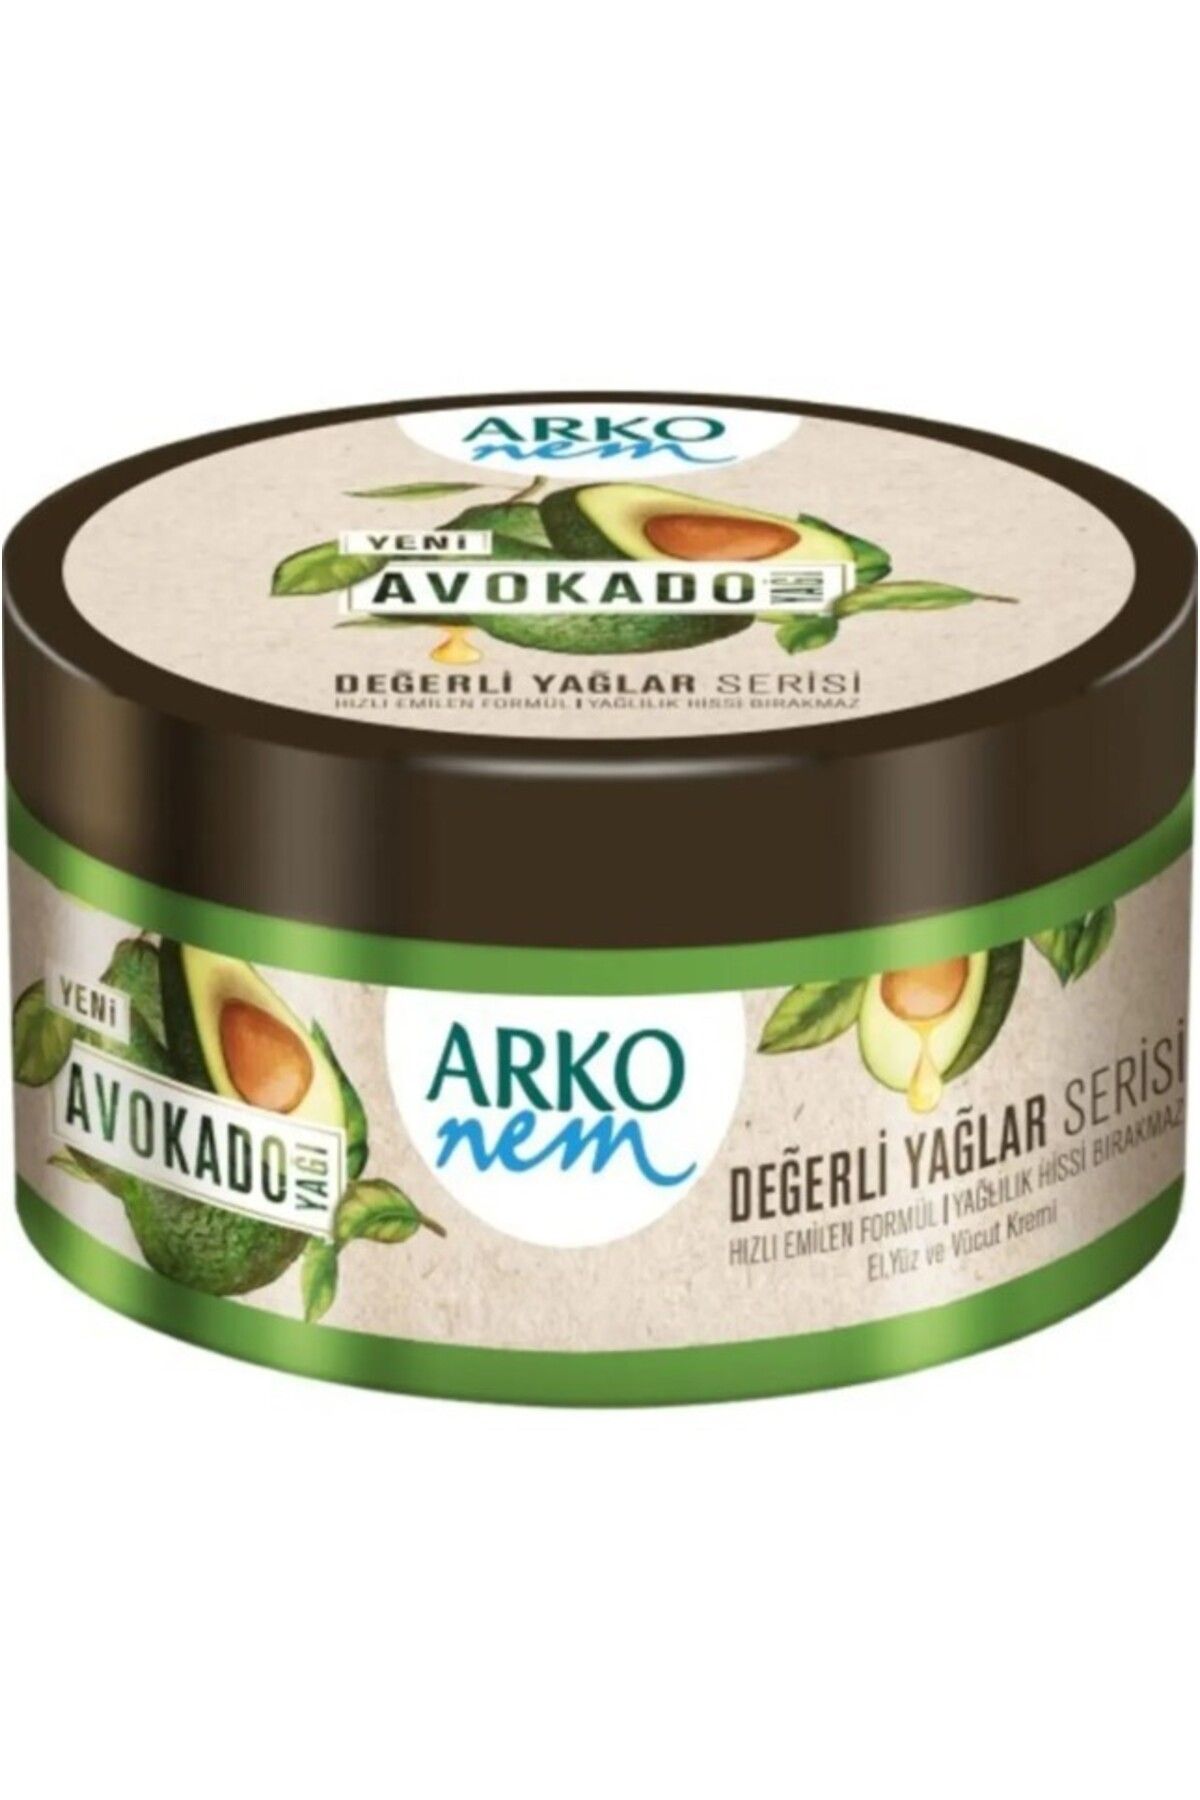 Arko Nem Değerli Yağlar Avokado Yağı El Ve Vücut Kremi 250 ml